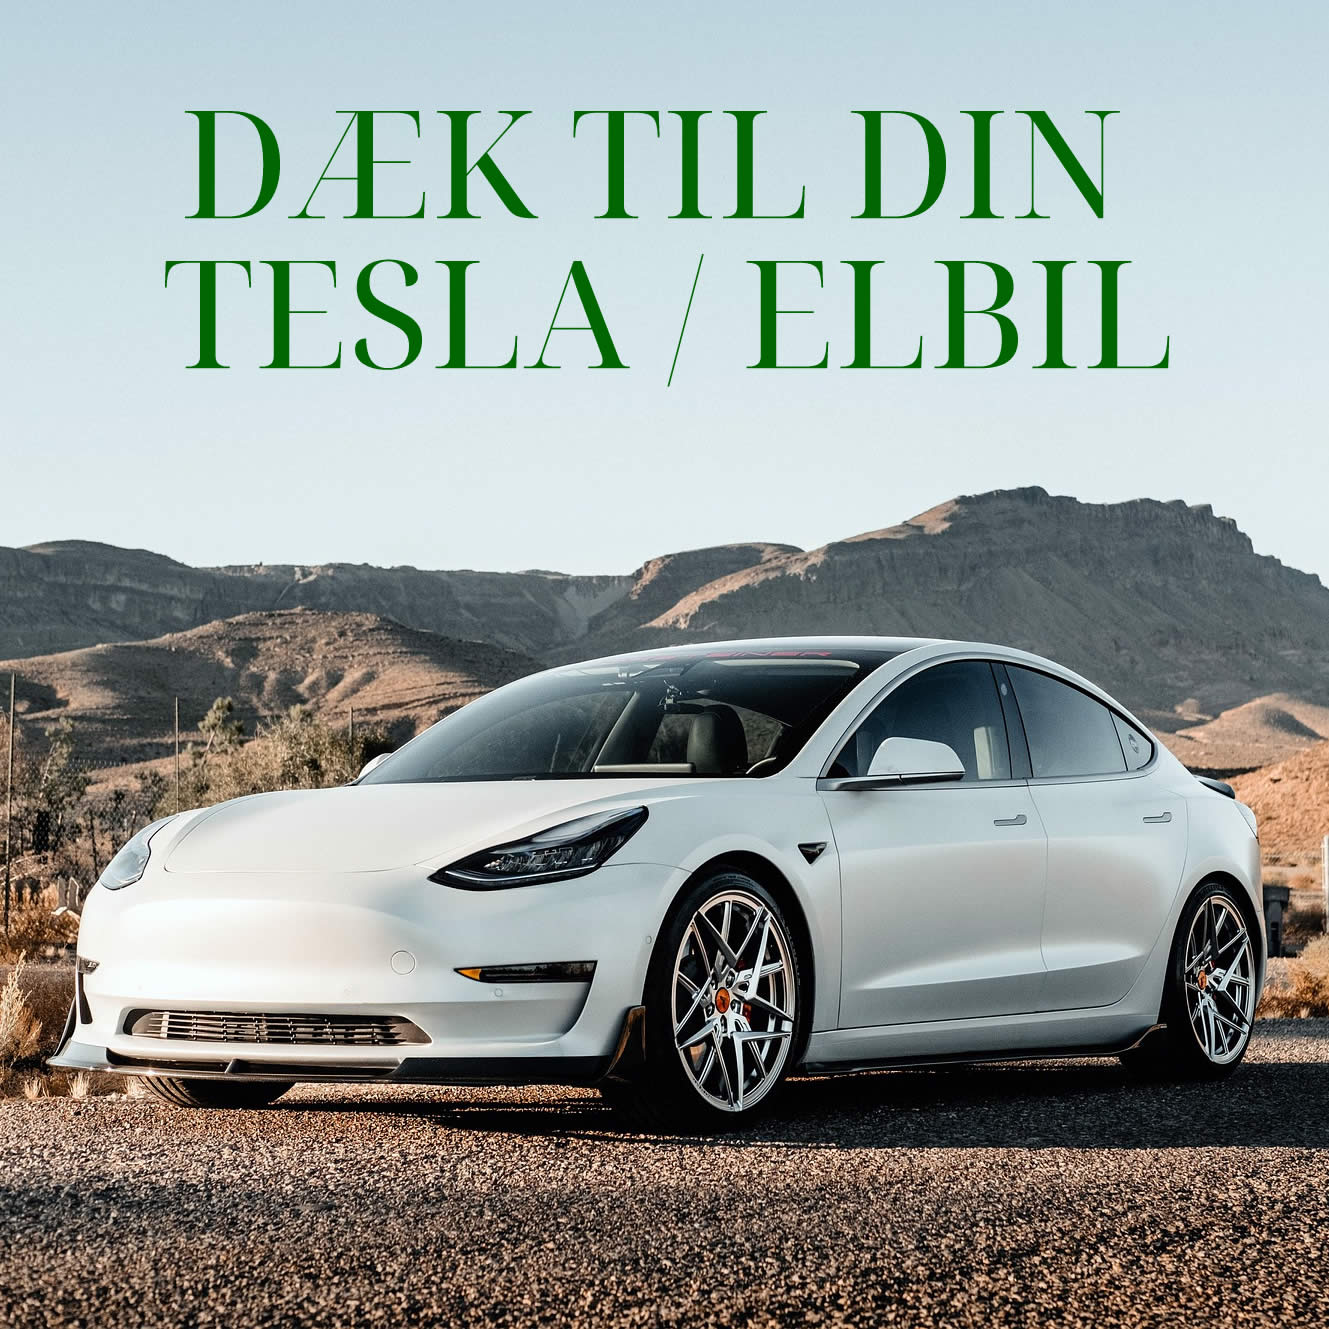 Dæk til din Tesla eller Elbil - Hvad skal du være opmærksom på ?